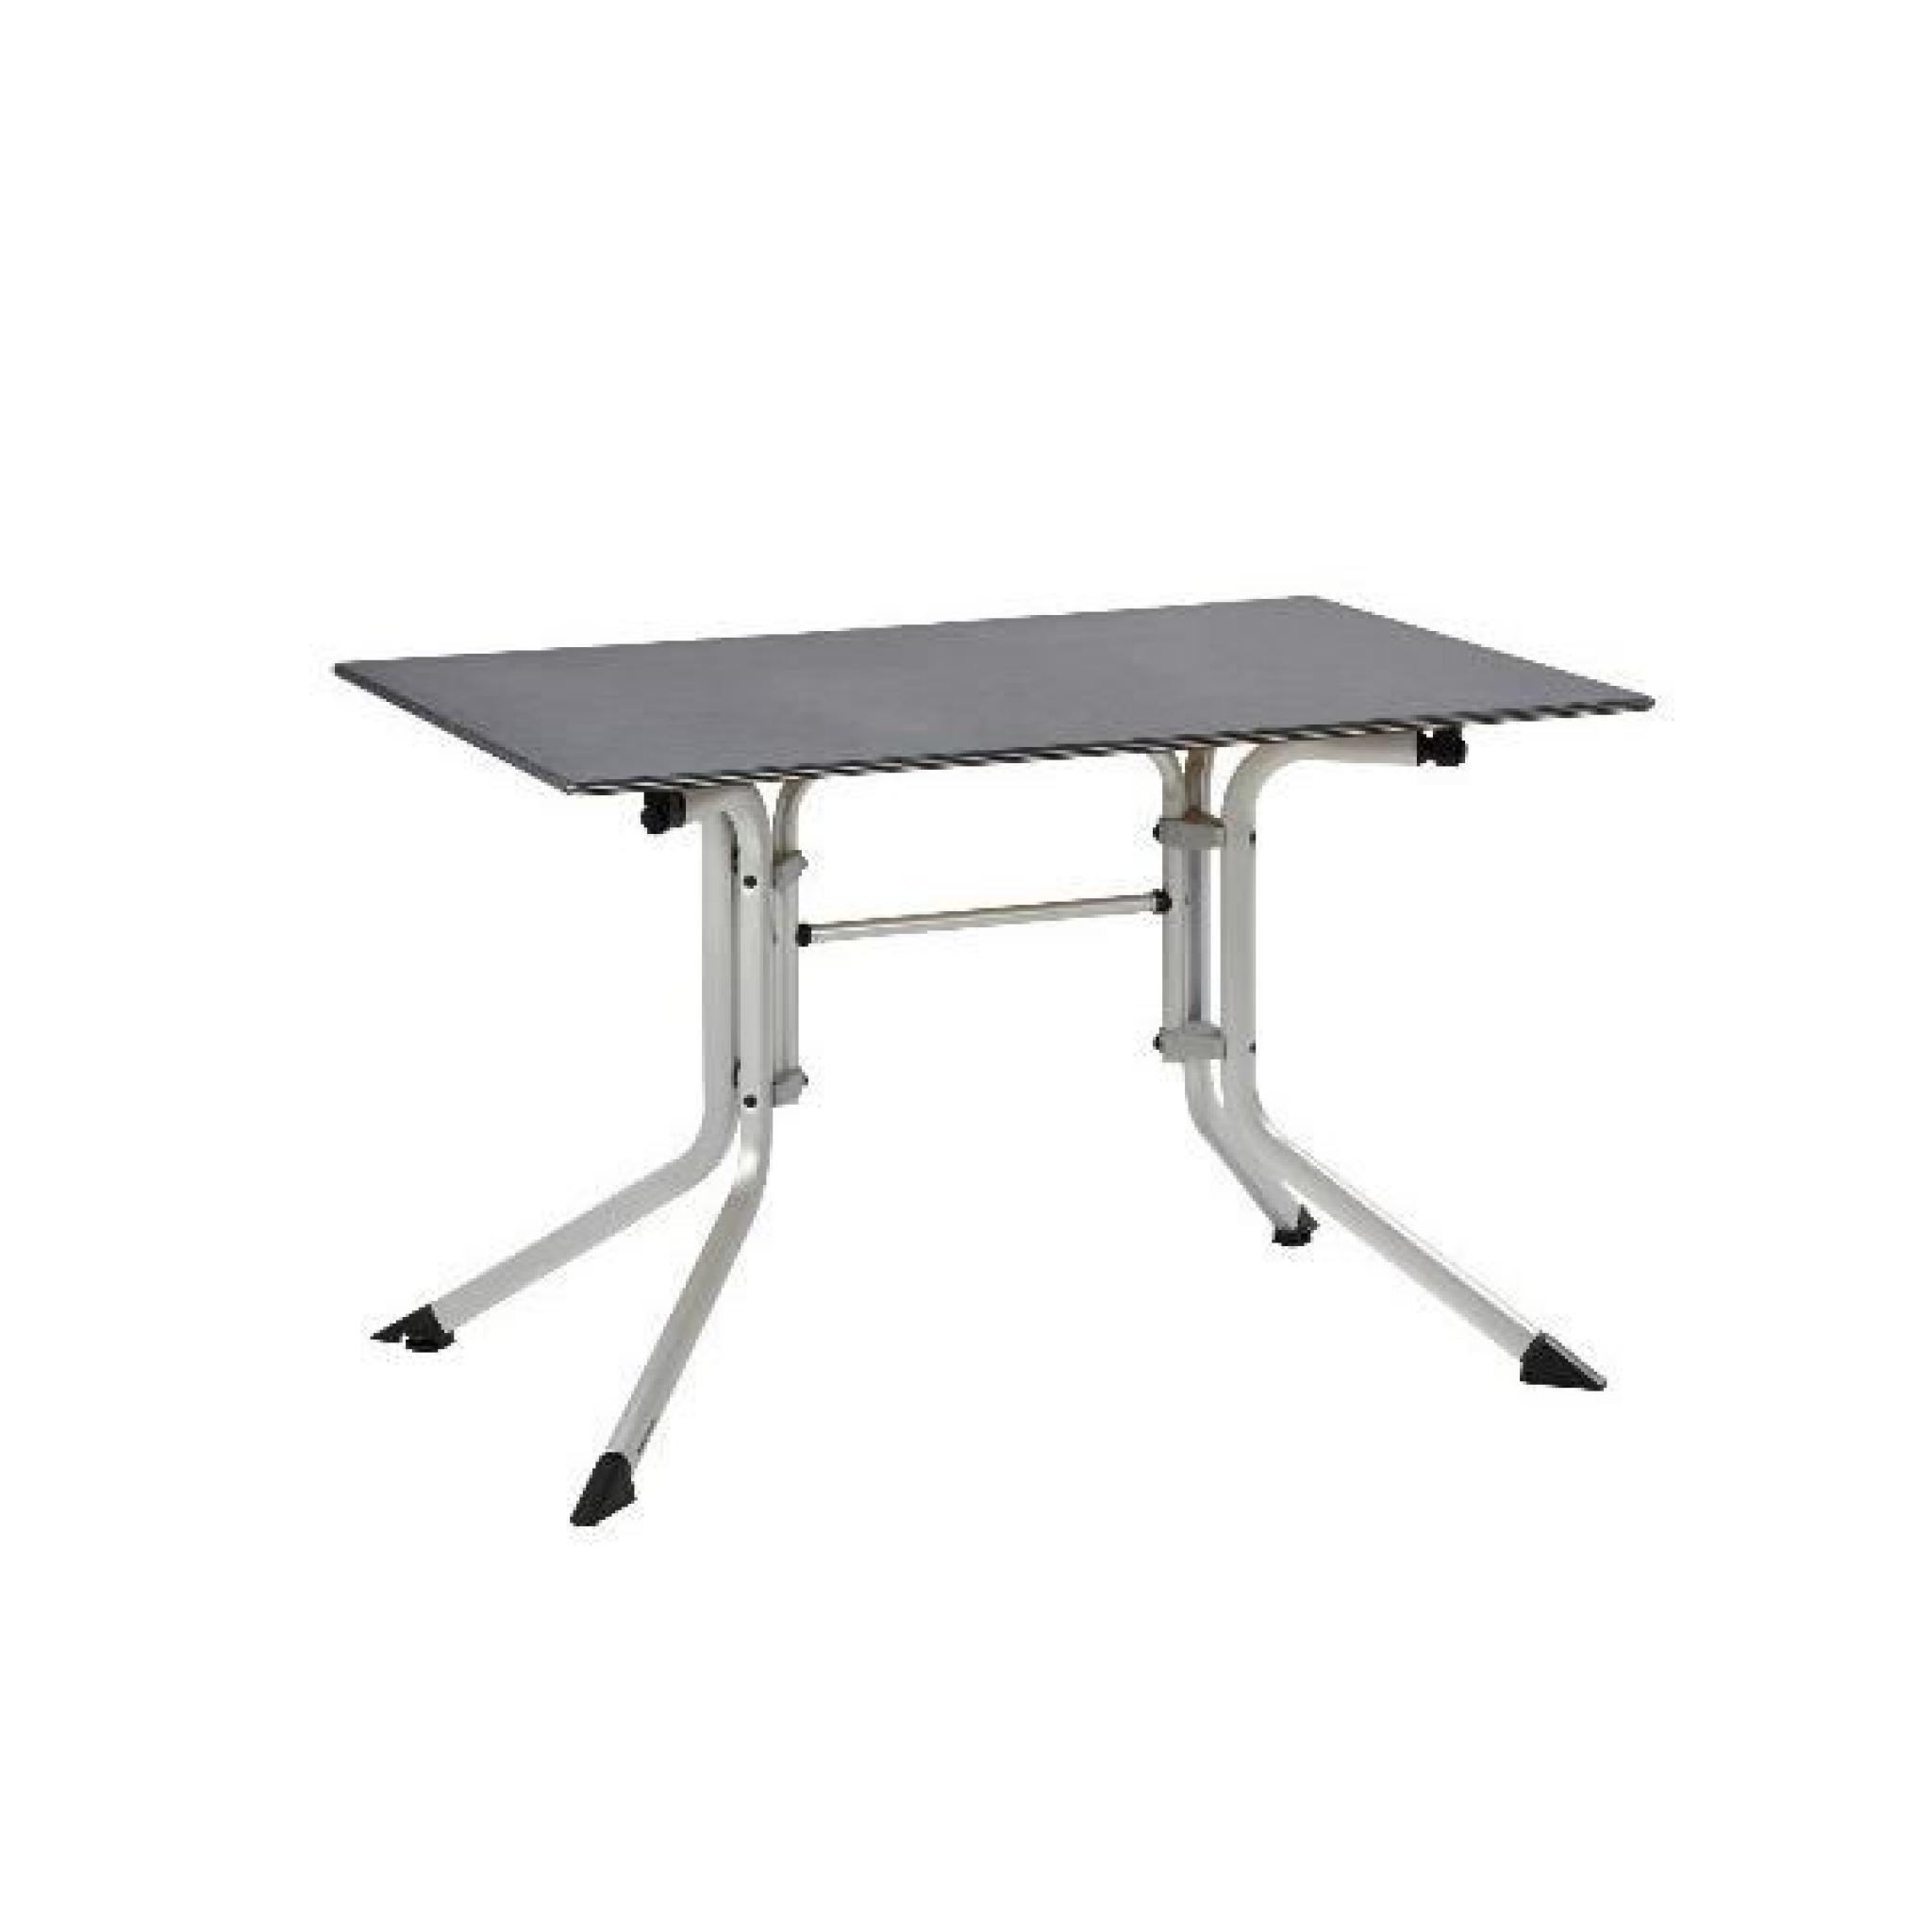 Table de jardin pliante argent/gris ADVANTAGE en aluminium - Ø 100 x H 74 cm